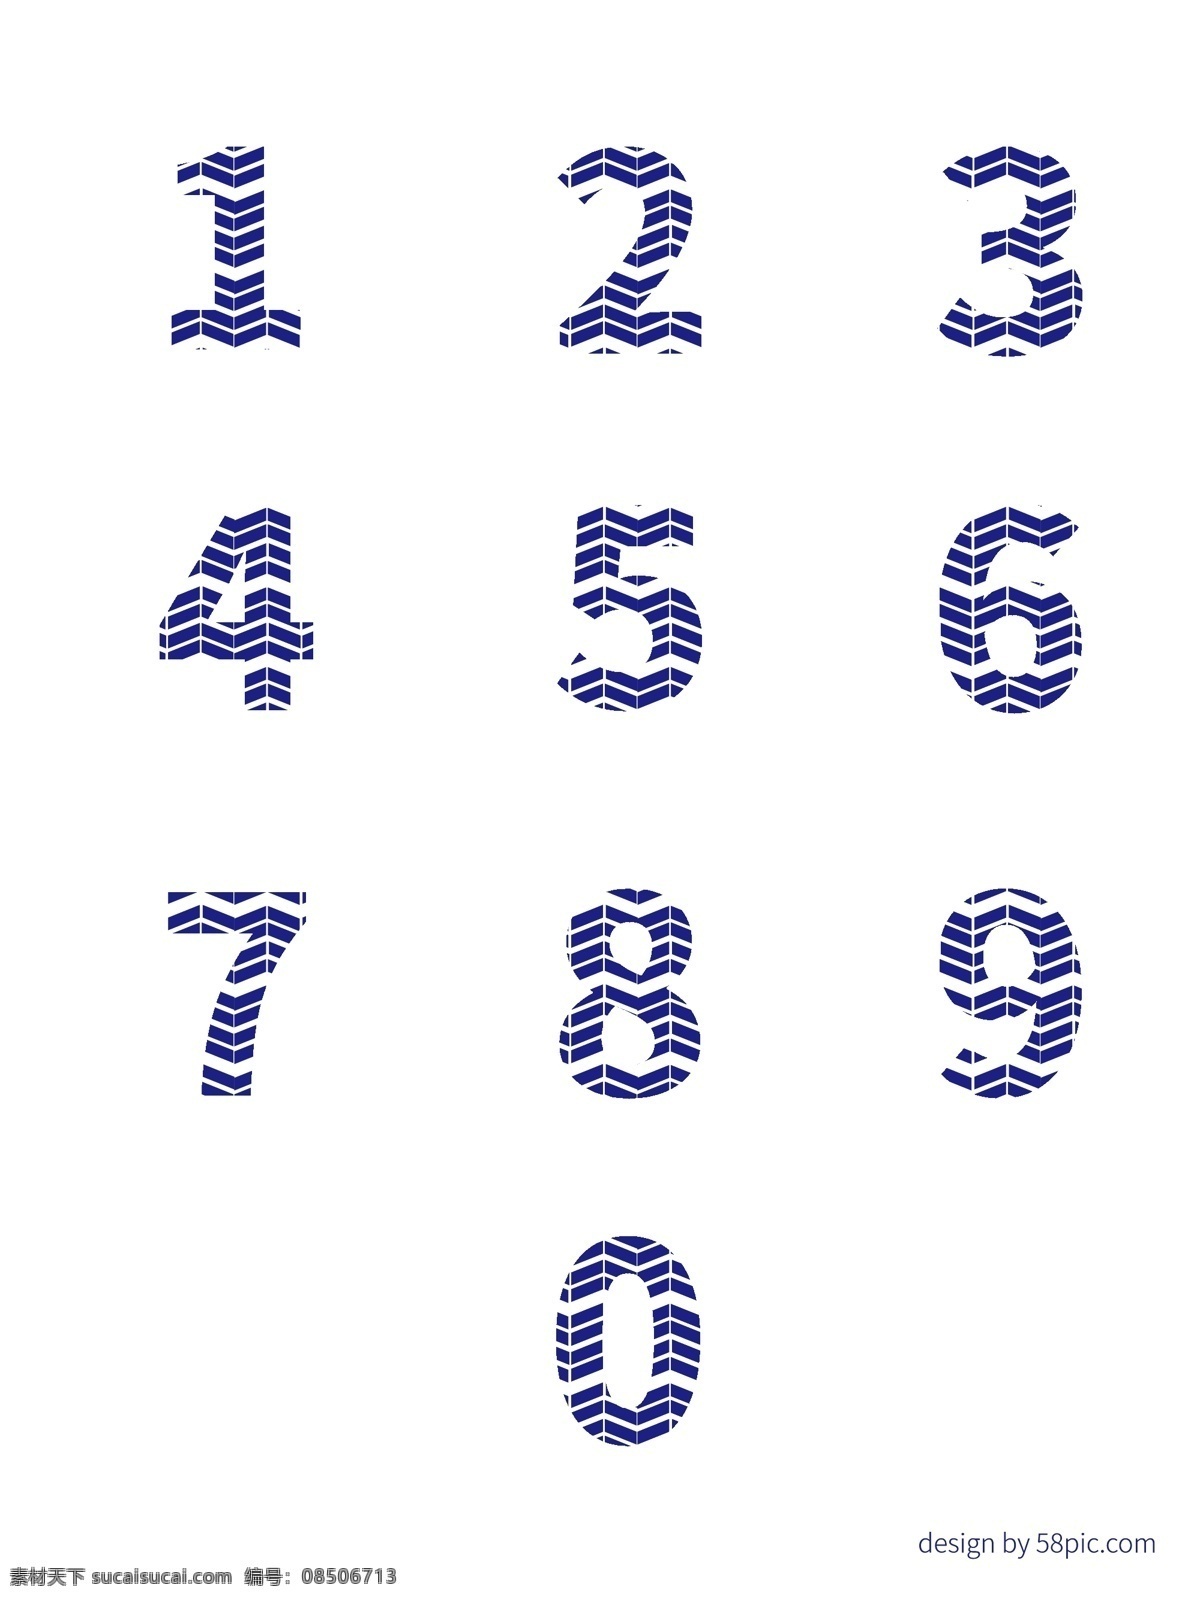 阿拉伯数字 创意 折叠 立体 艺术 字体 创意字体 折叠字体 立体字体 数字